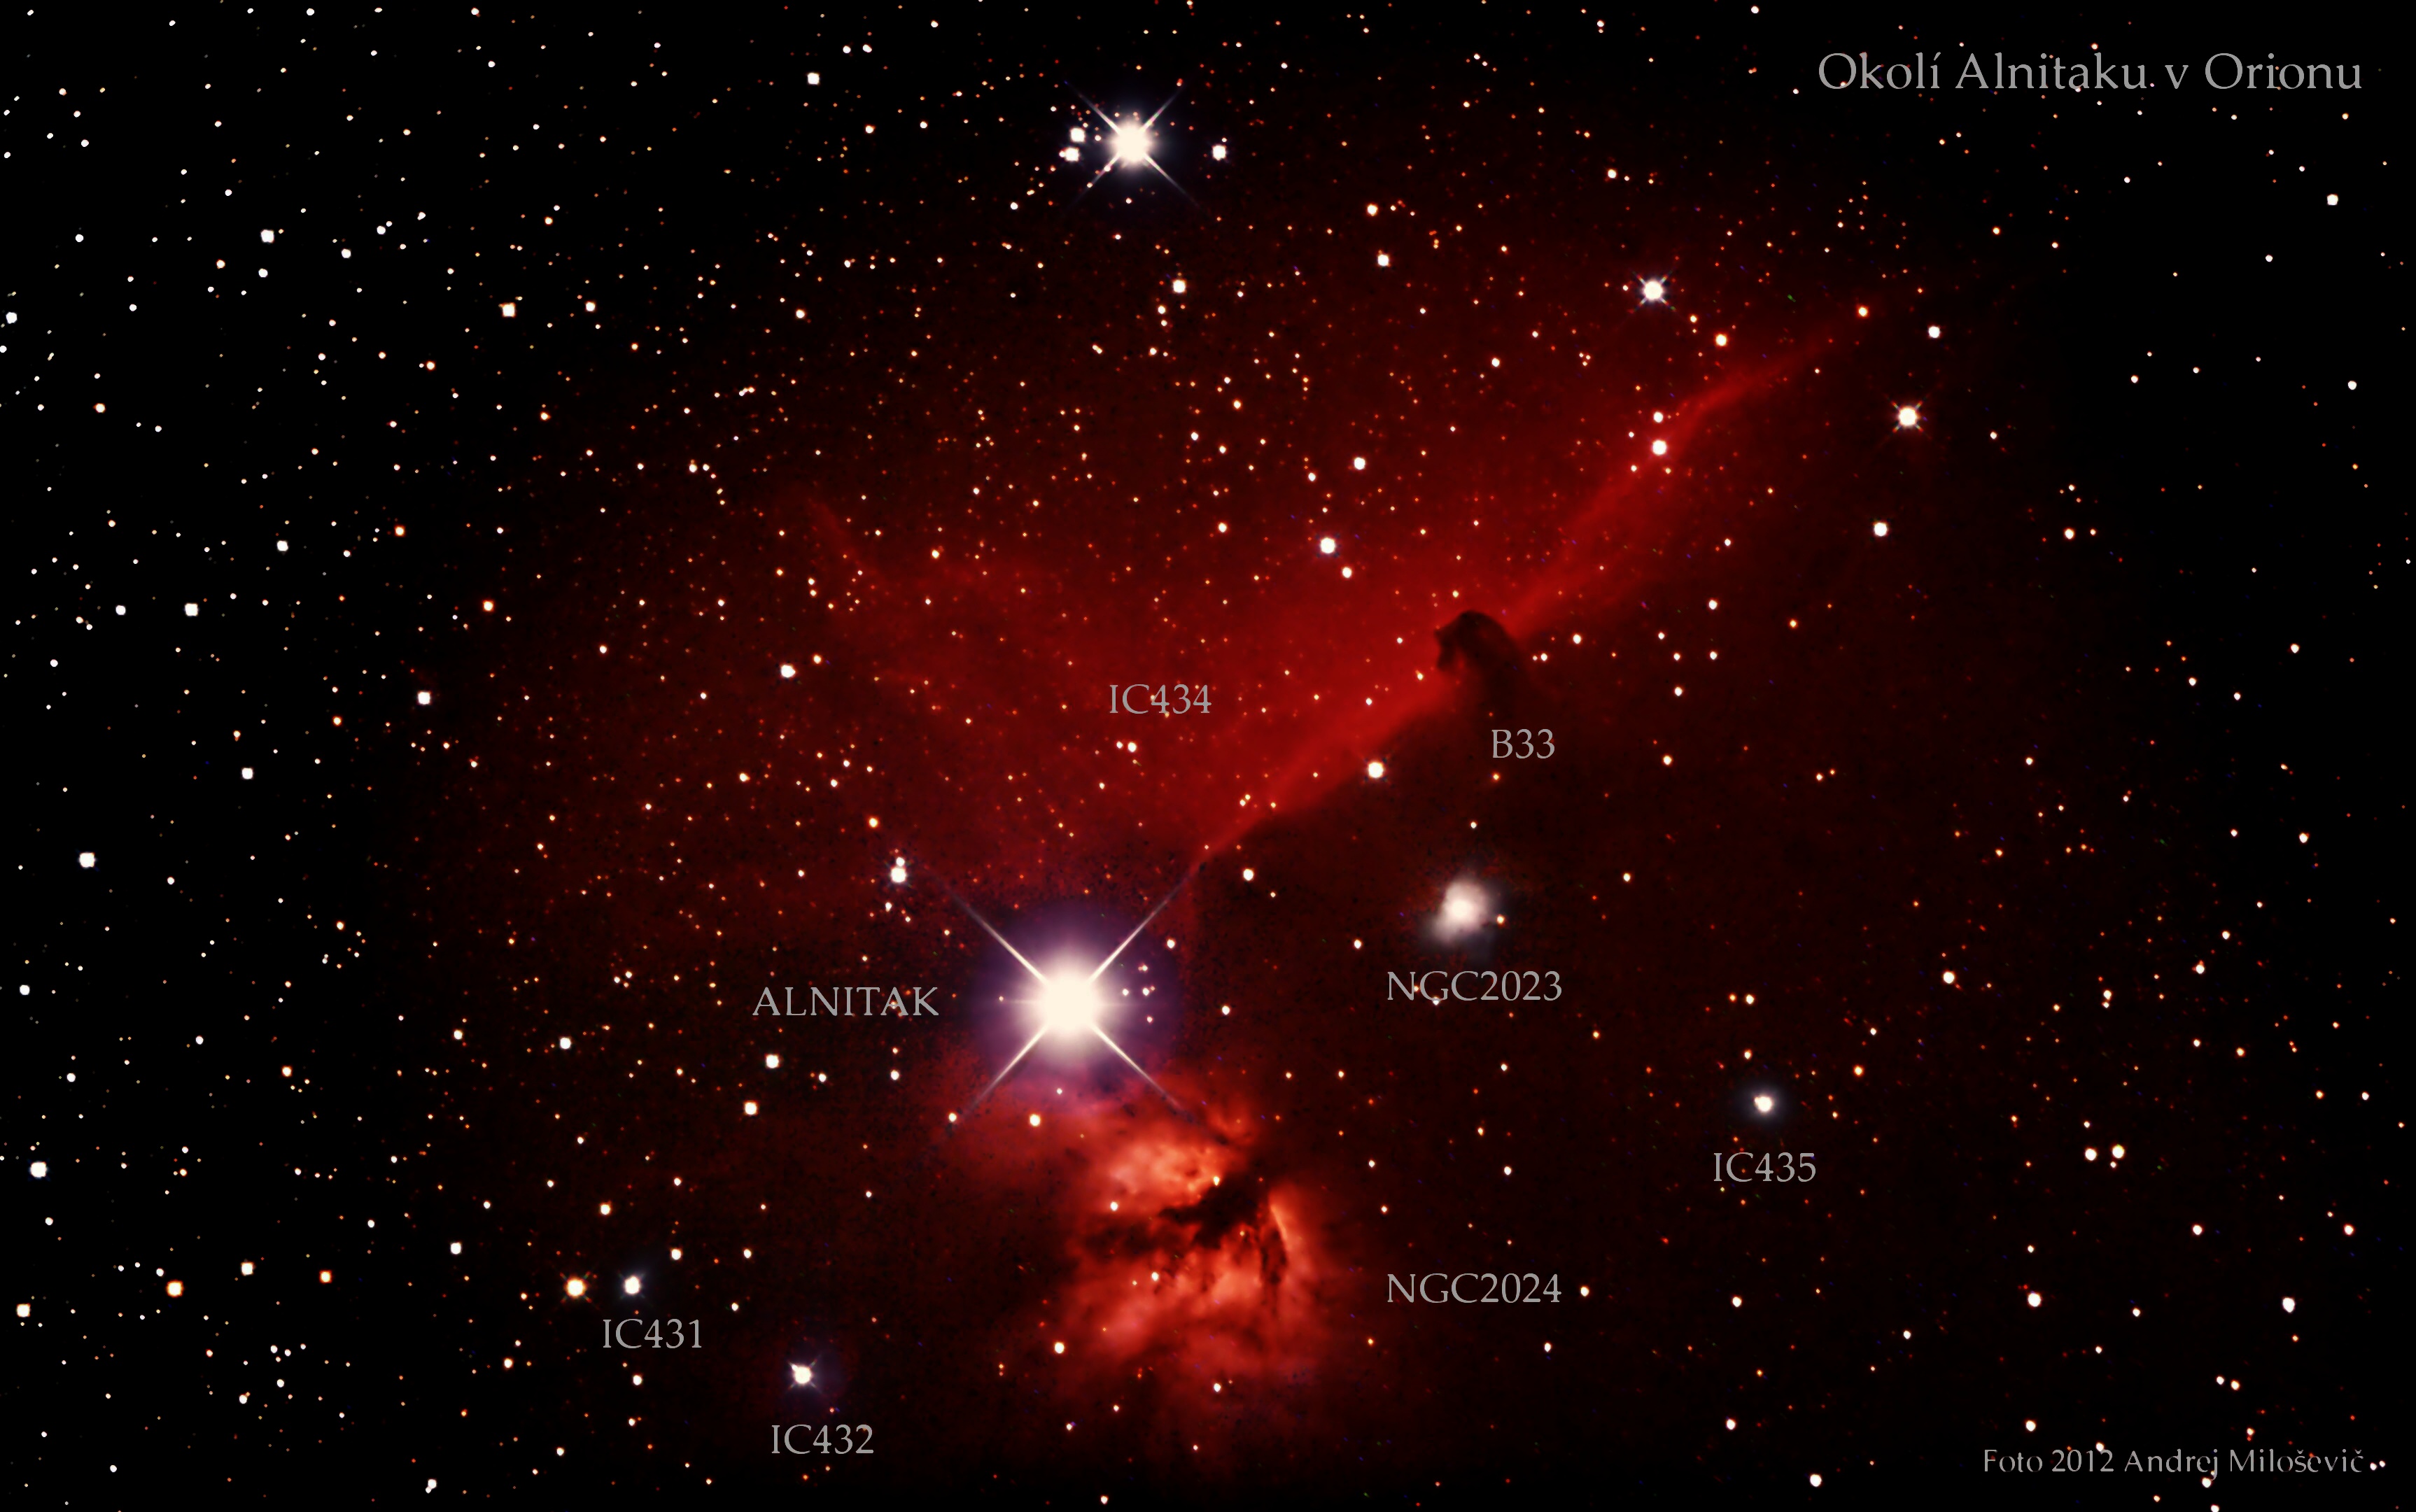 Popis objektů kolem Alnitaku v Orionu